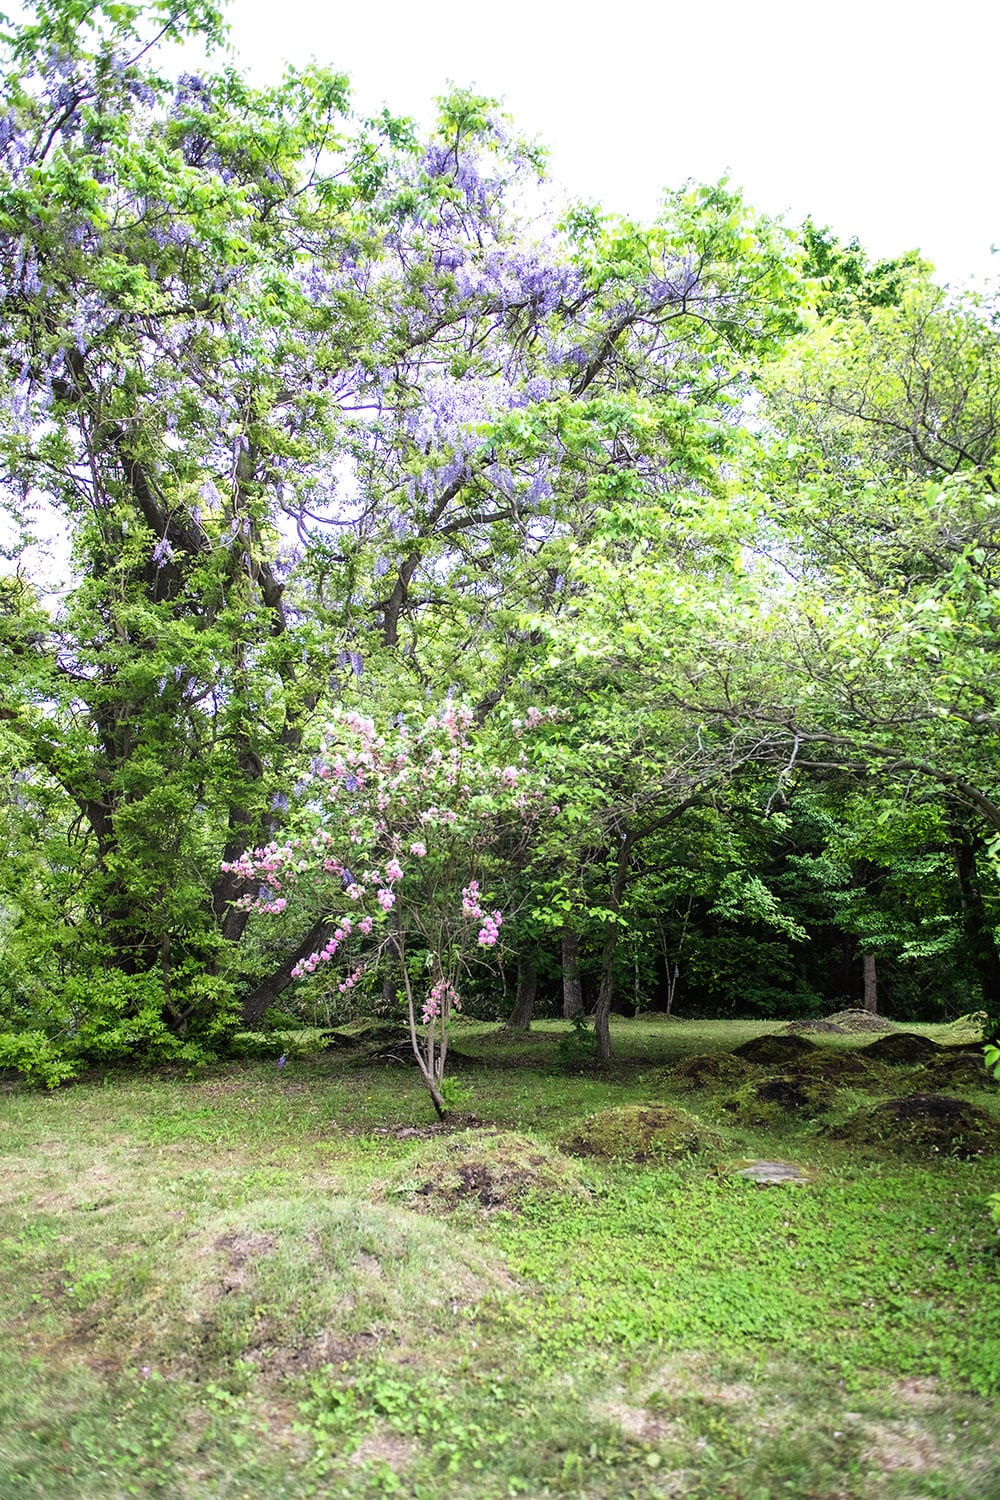 藤の木の下には蟻塚のような土坑墓(埋葬する施設)がある。